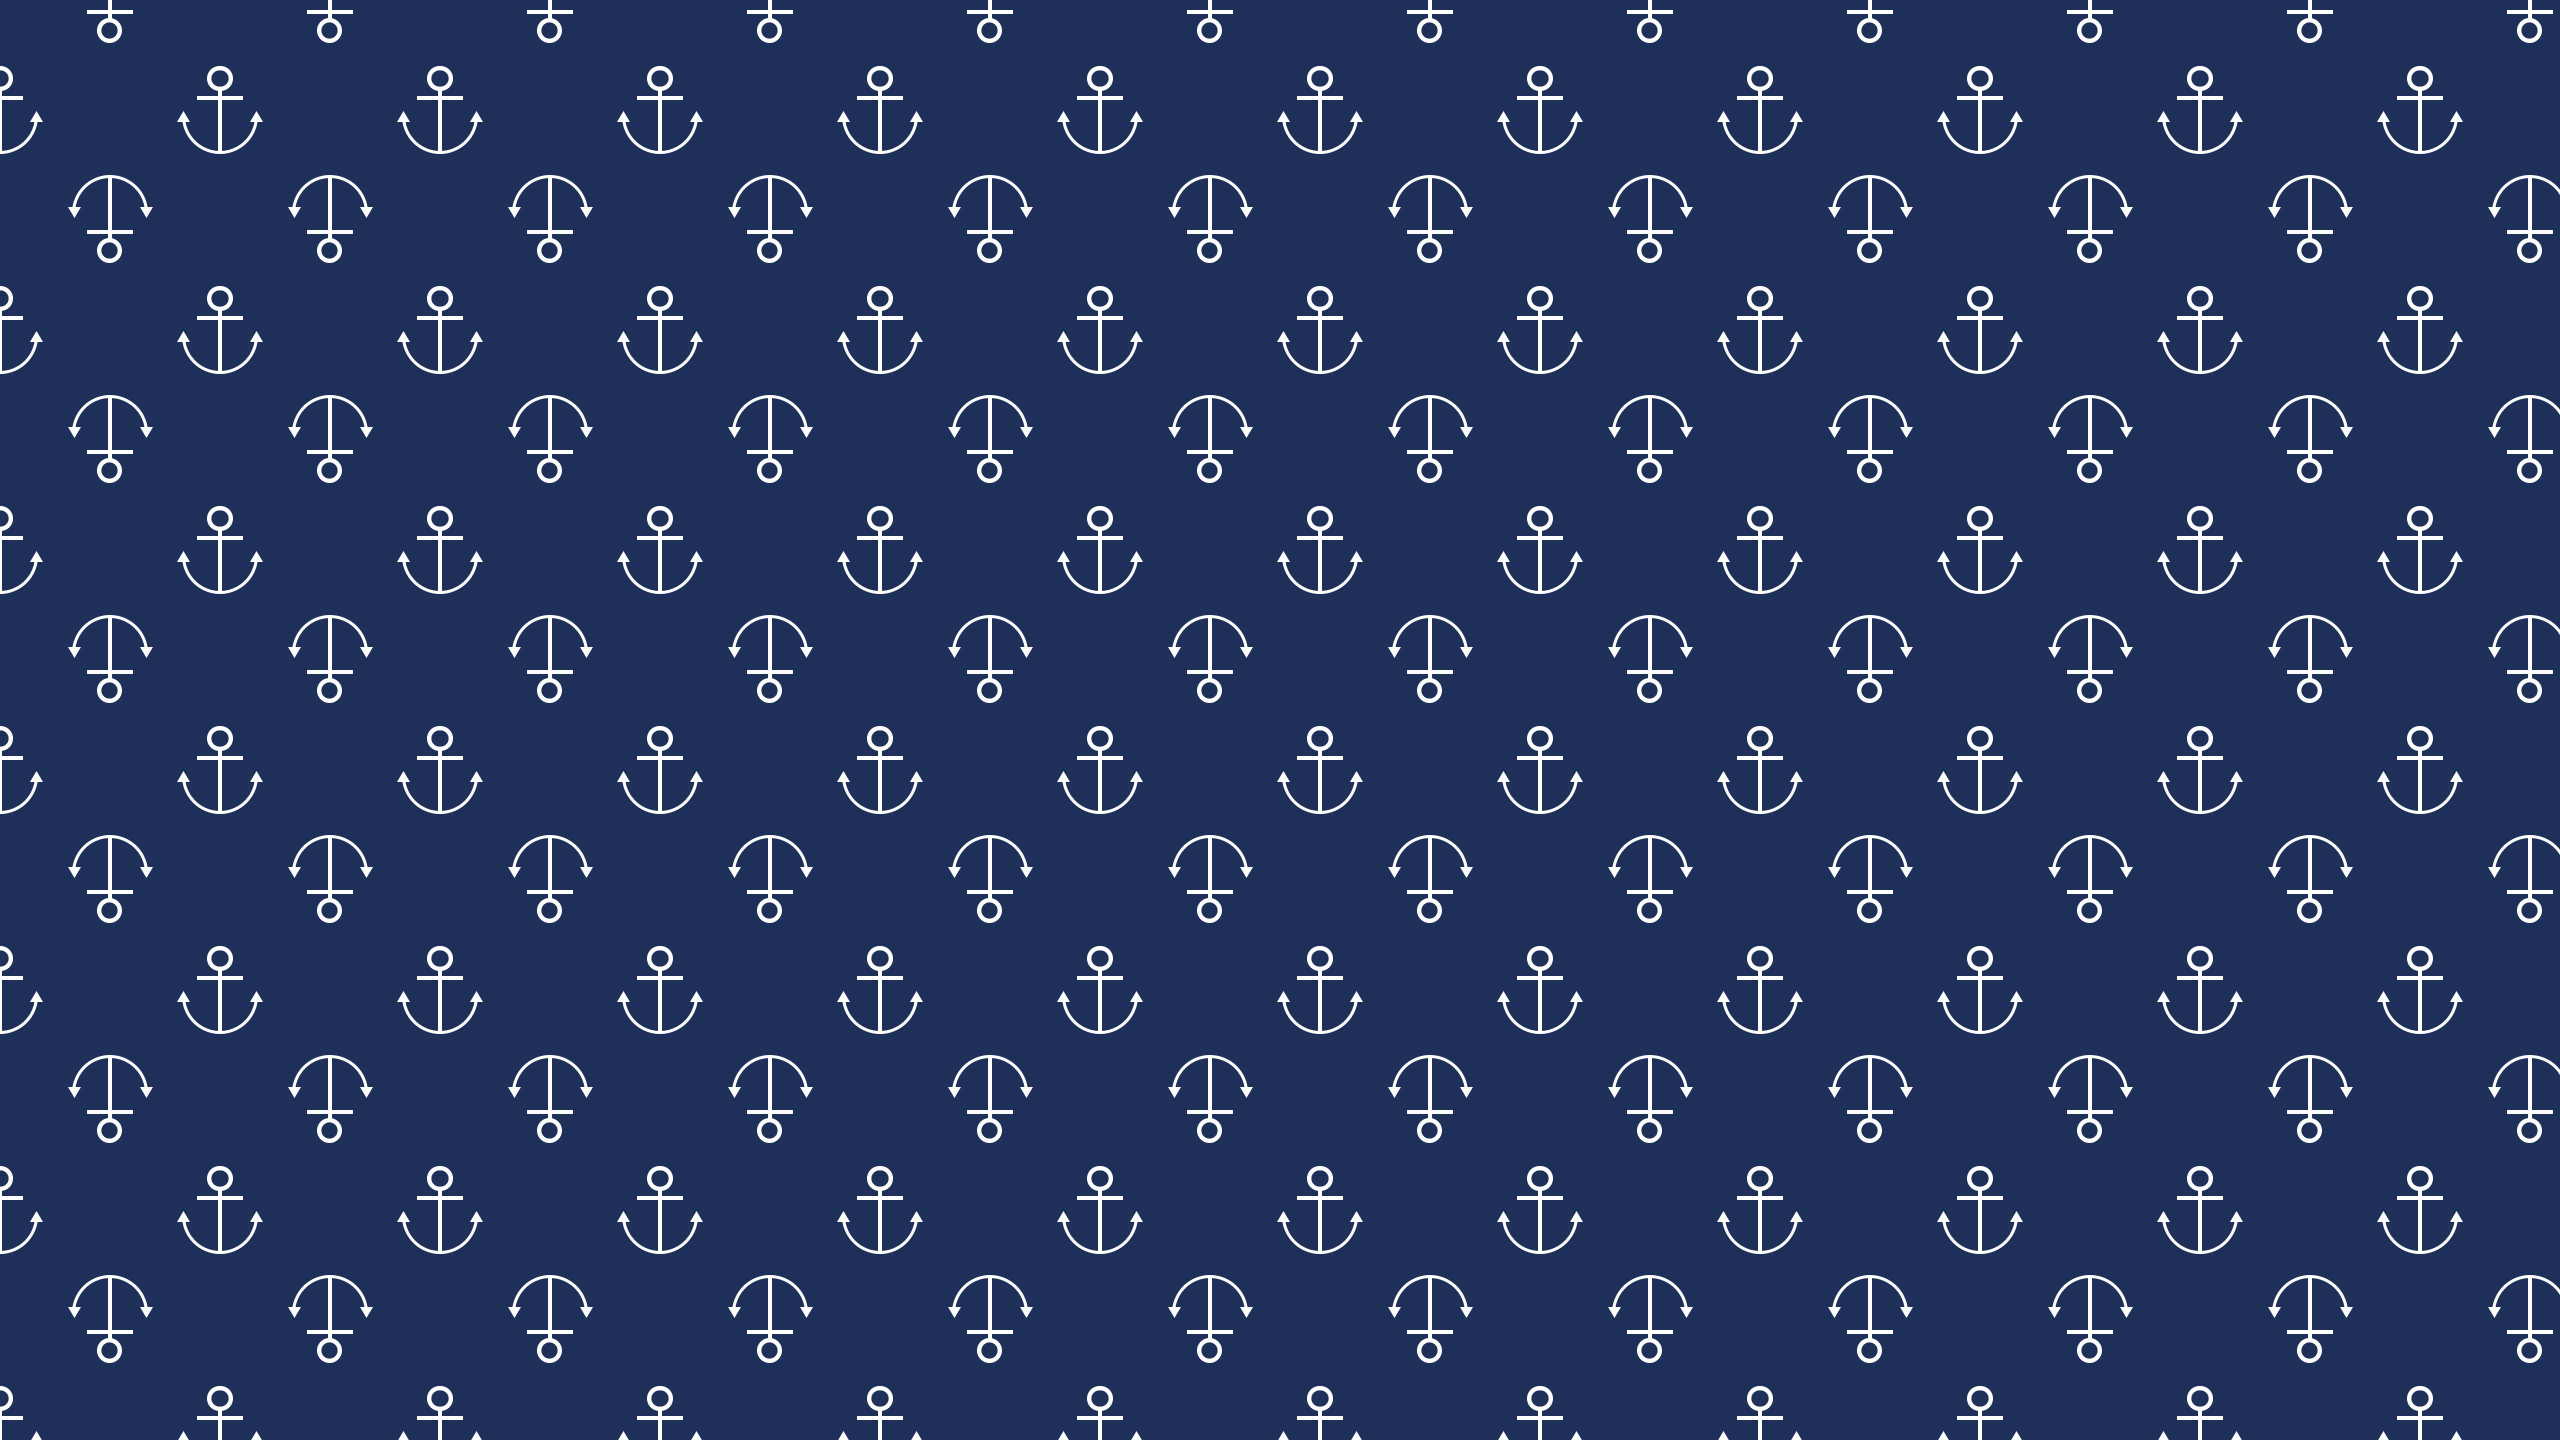 2560x1440 Cute anchor on chevron wallpaper!â | Home Decor | Pinterest ... cute anchor  backgrounds ...